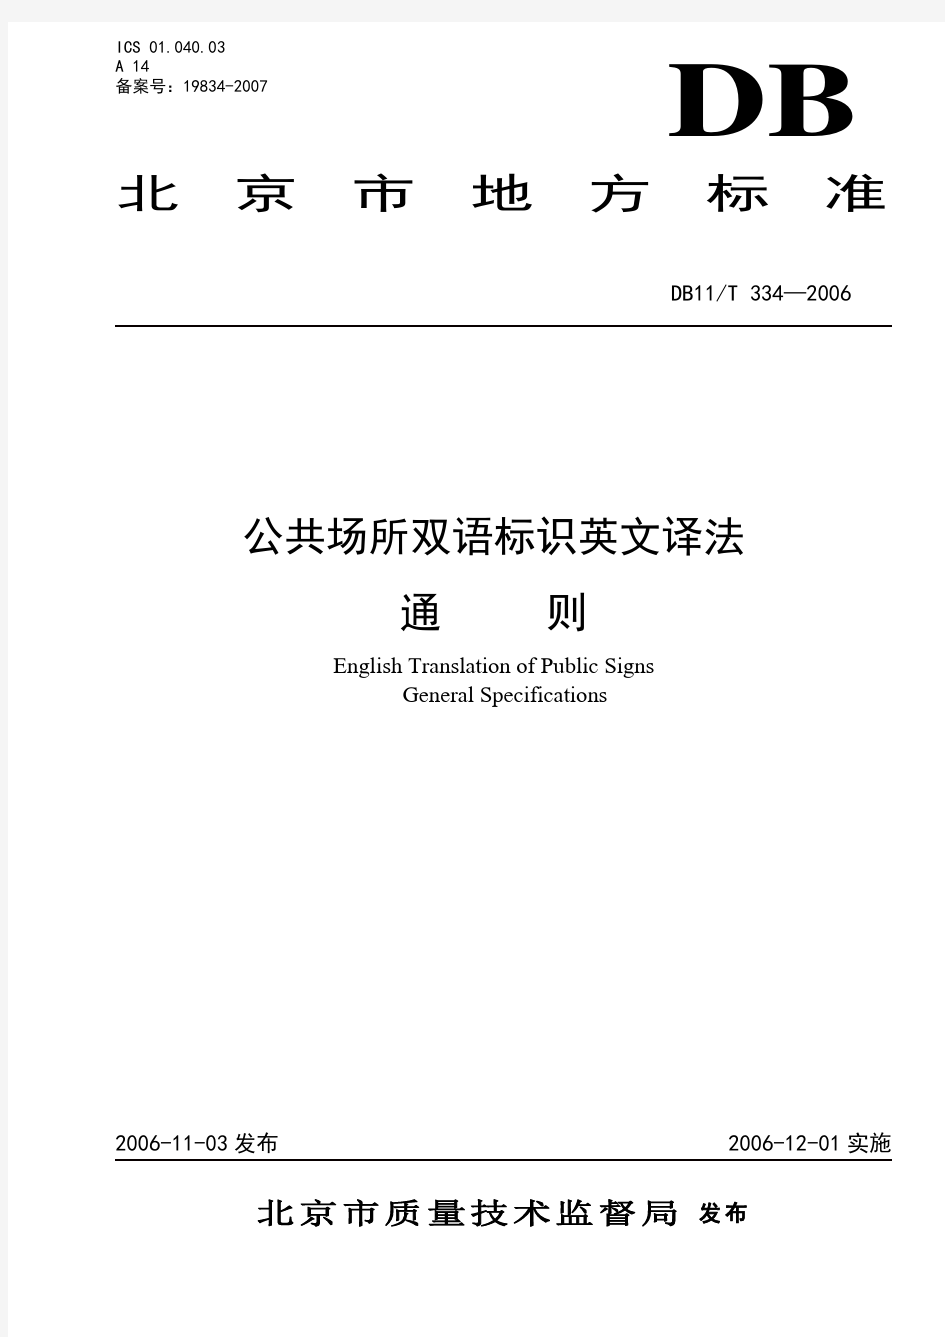 《北京市公共场所双语标识英文译法 通则》